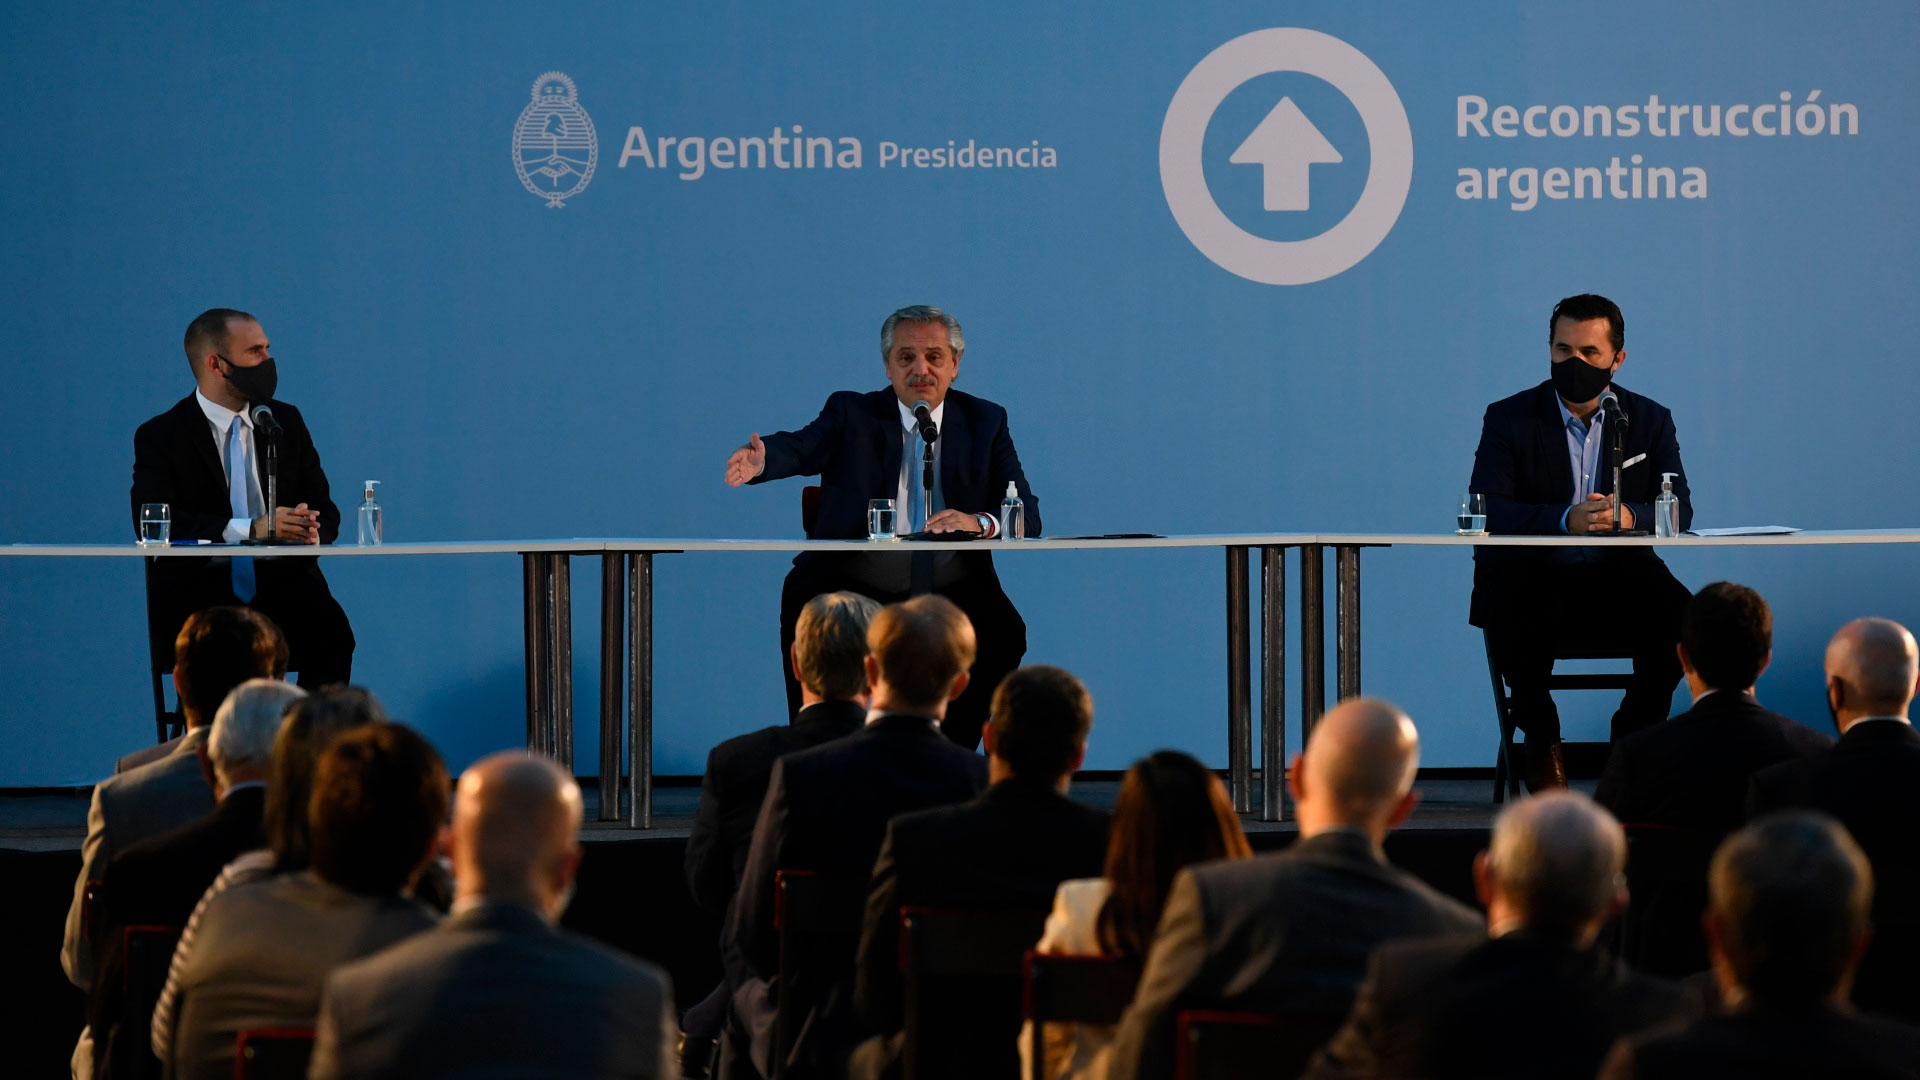 El presidente Alberto Fernández, flanqueado por el ministro de Economía, Martín Guzmán, y el secretario de Energía, Darío Martínez (Maximiliano Luna)